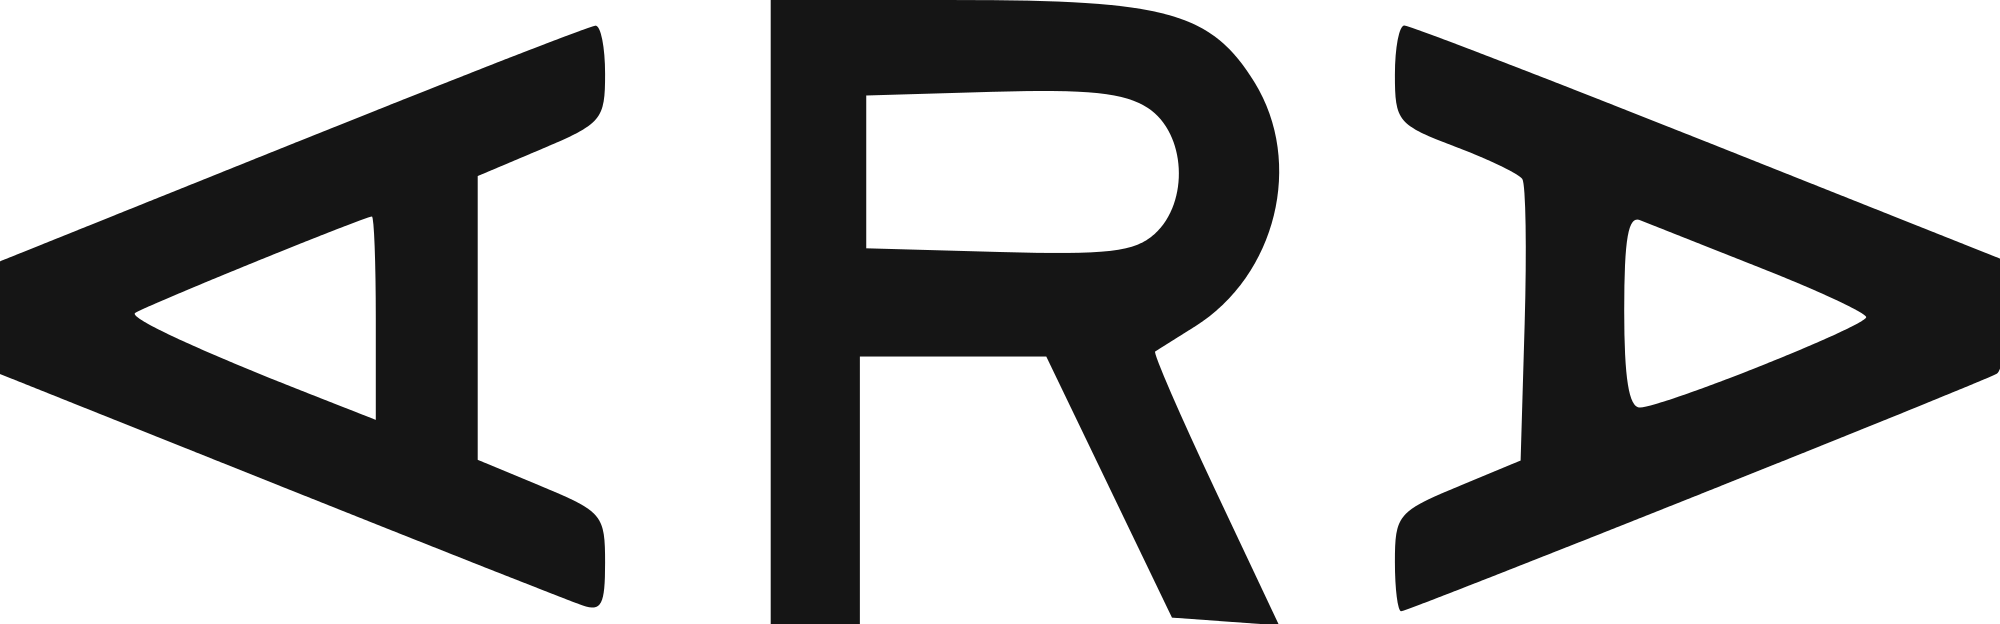 File:Logo Rubicon Project 201